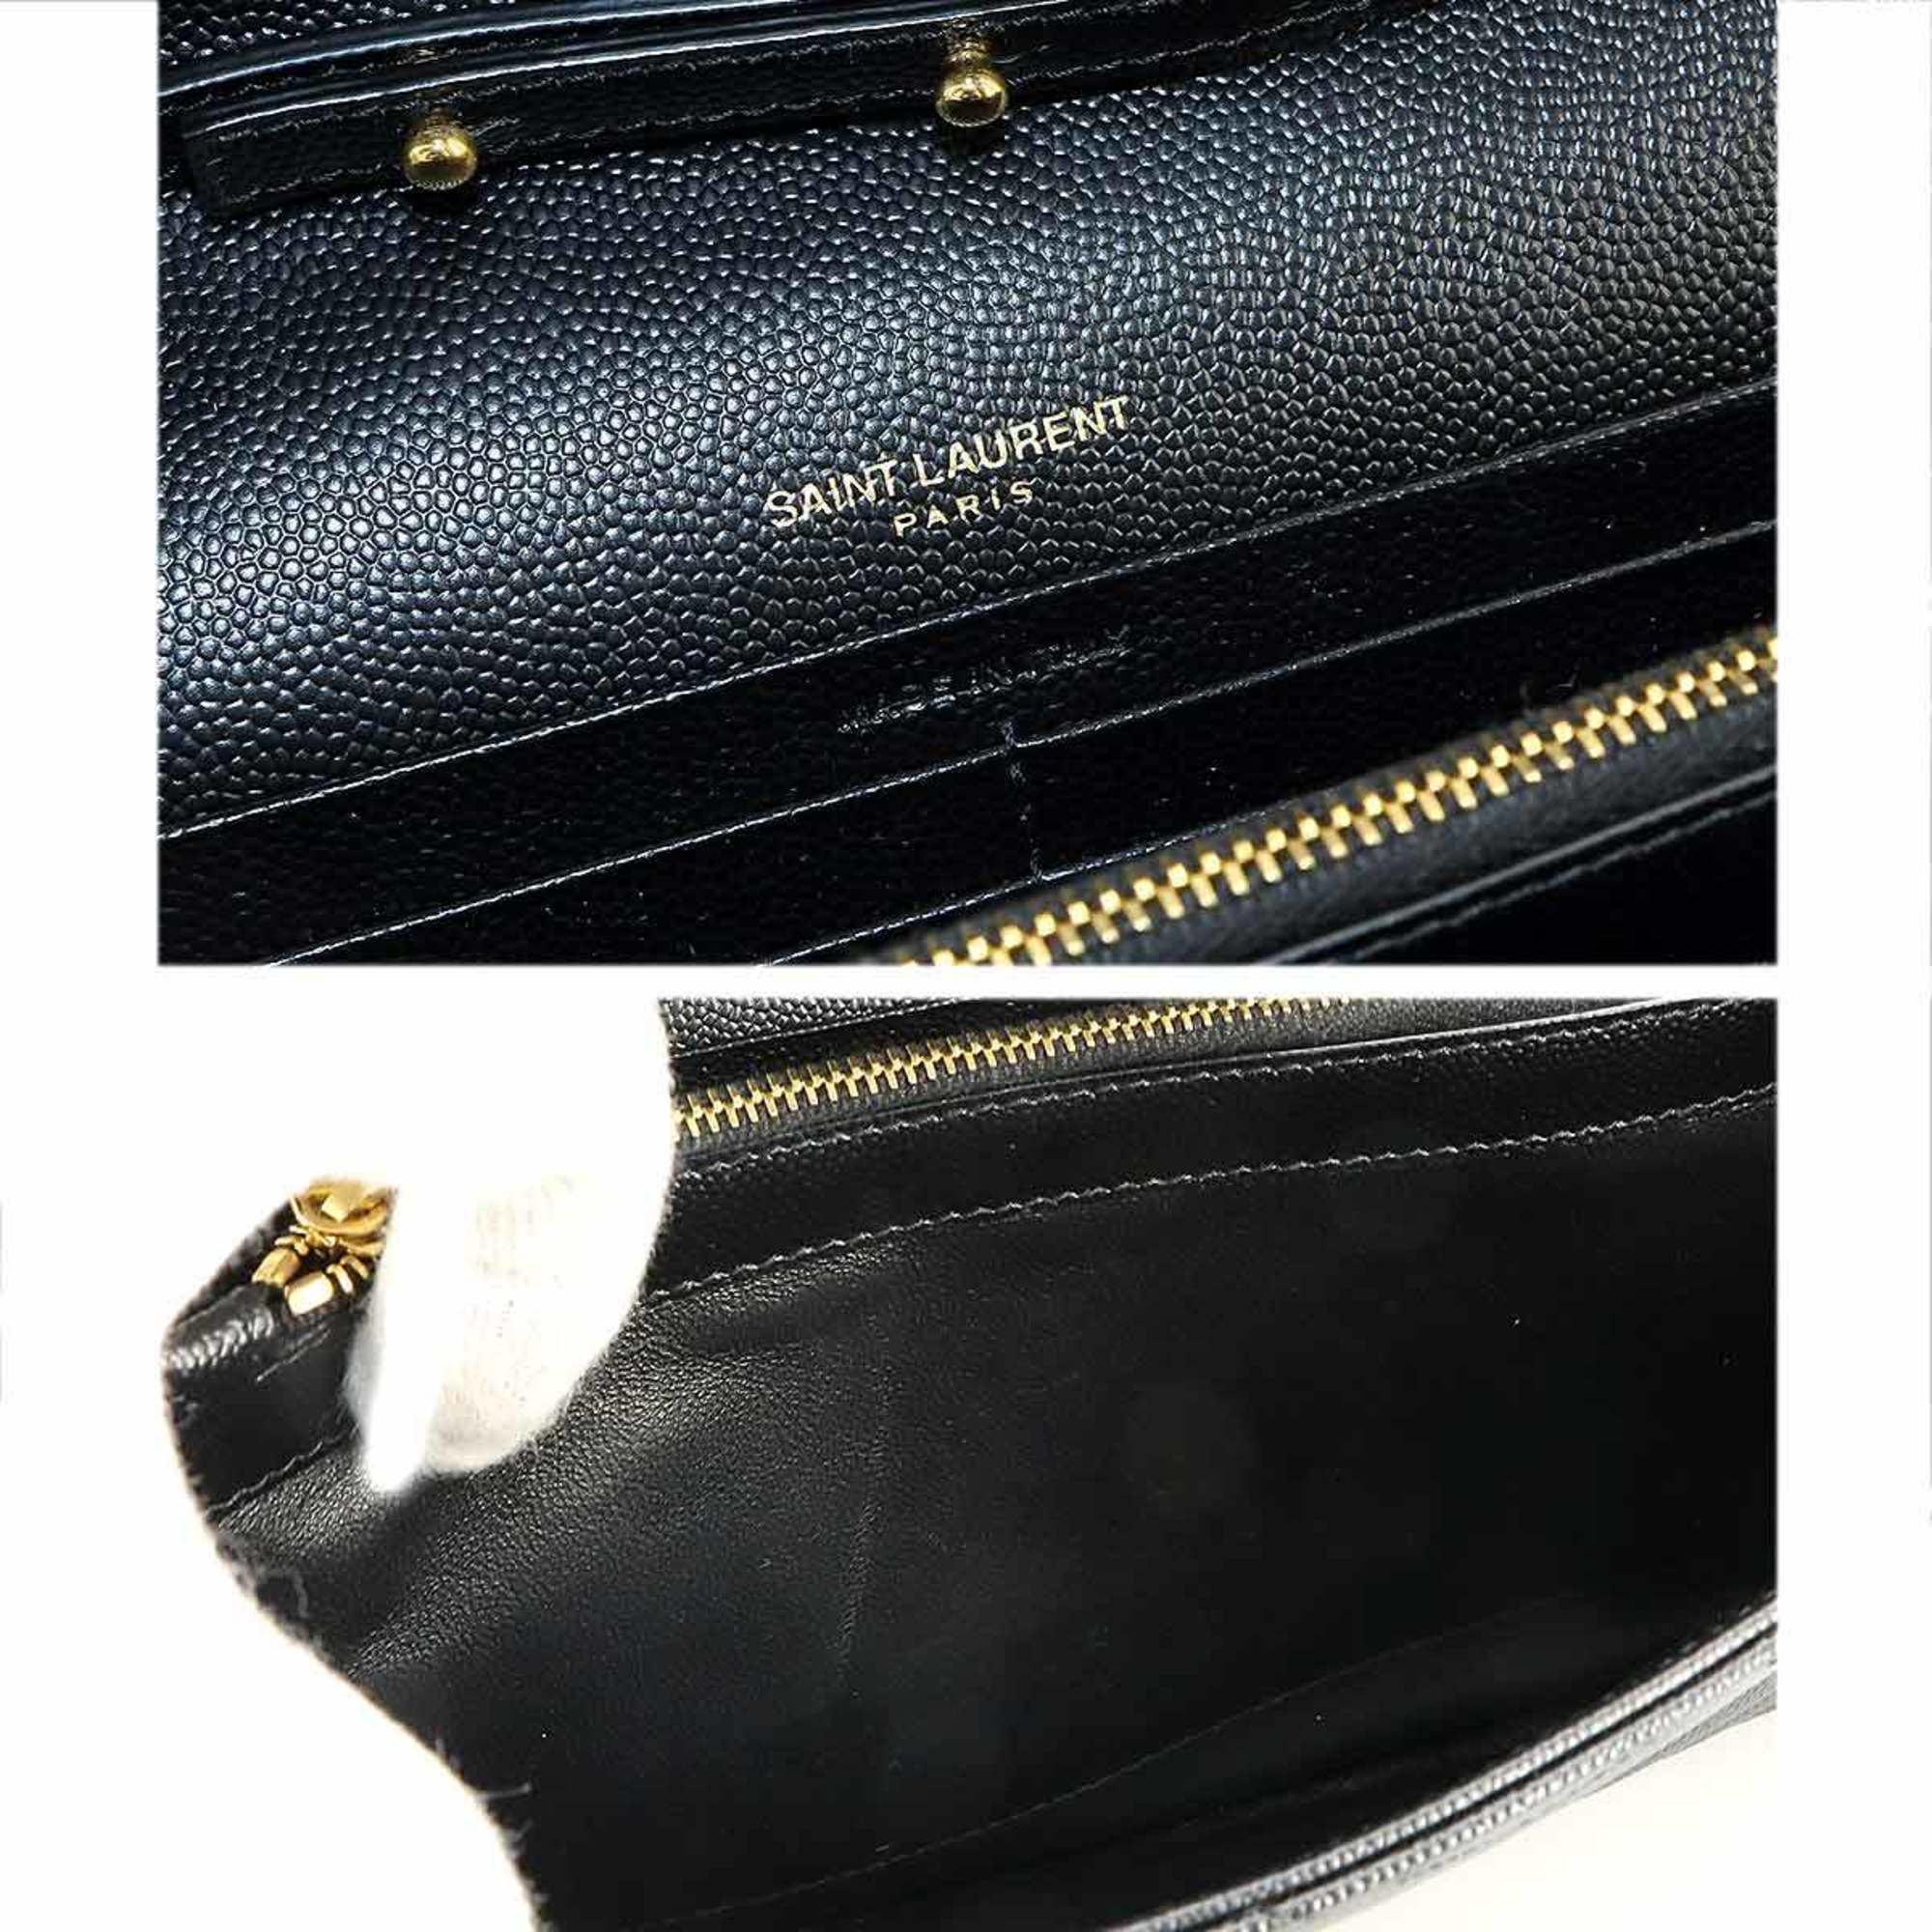 Yves Saint Laurent Saint Laurent Paris Cassandra Chain Wallet Long Leather Black 377828 Gold Hardware